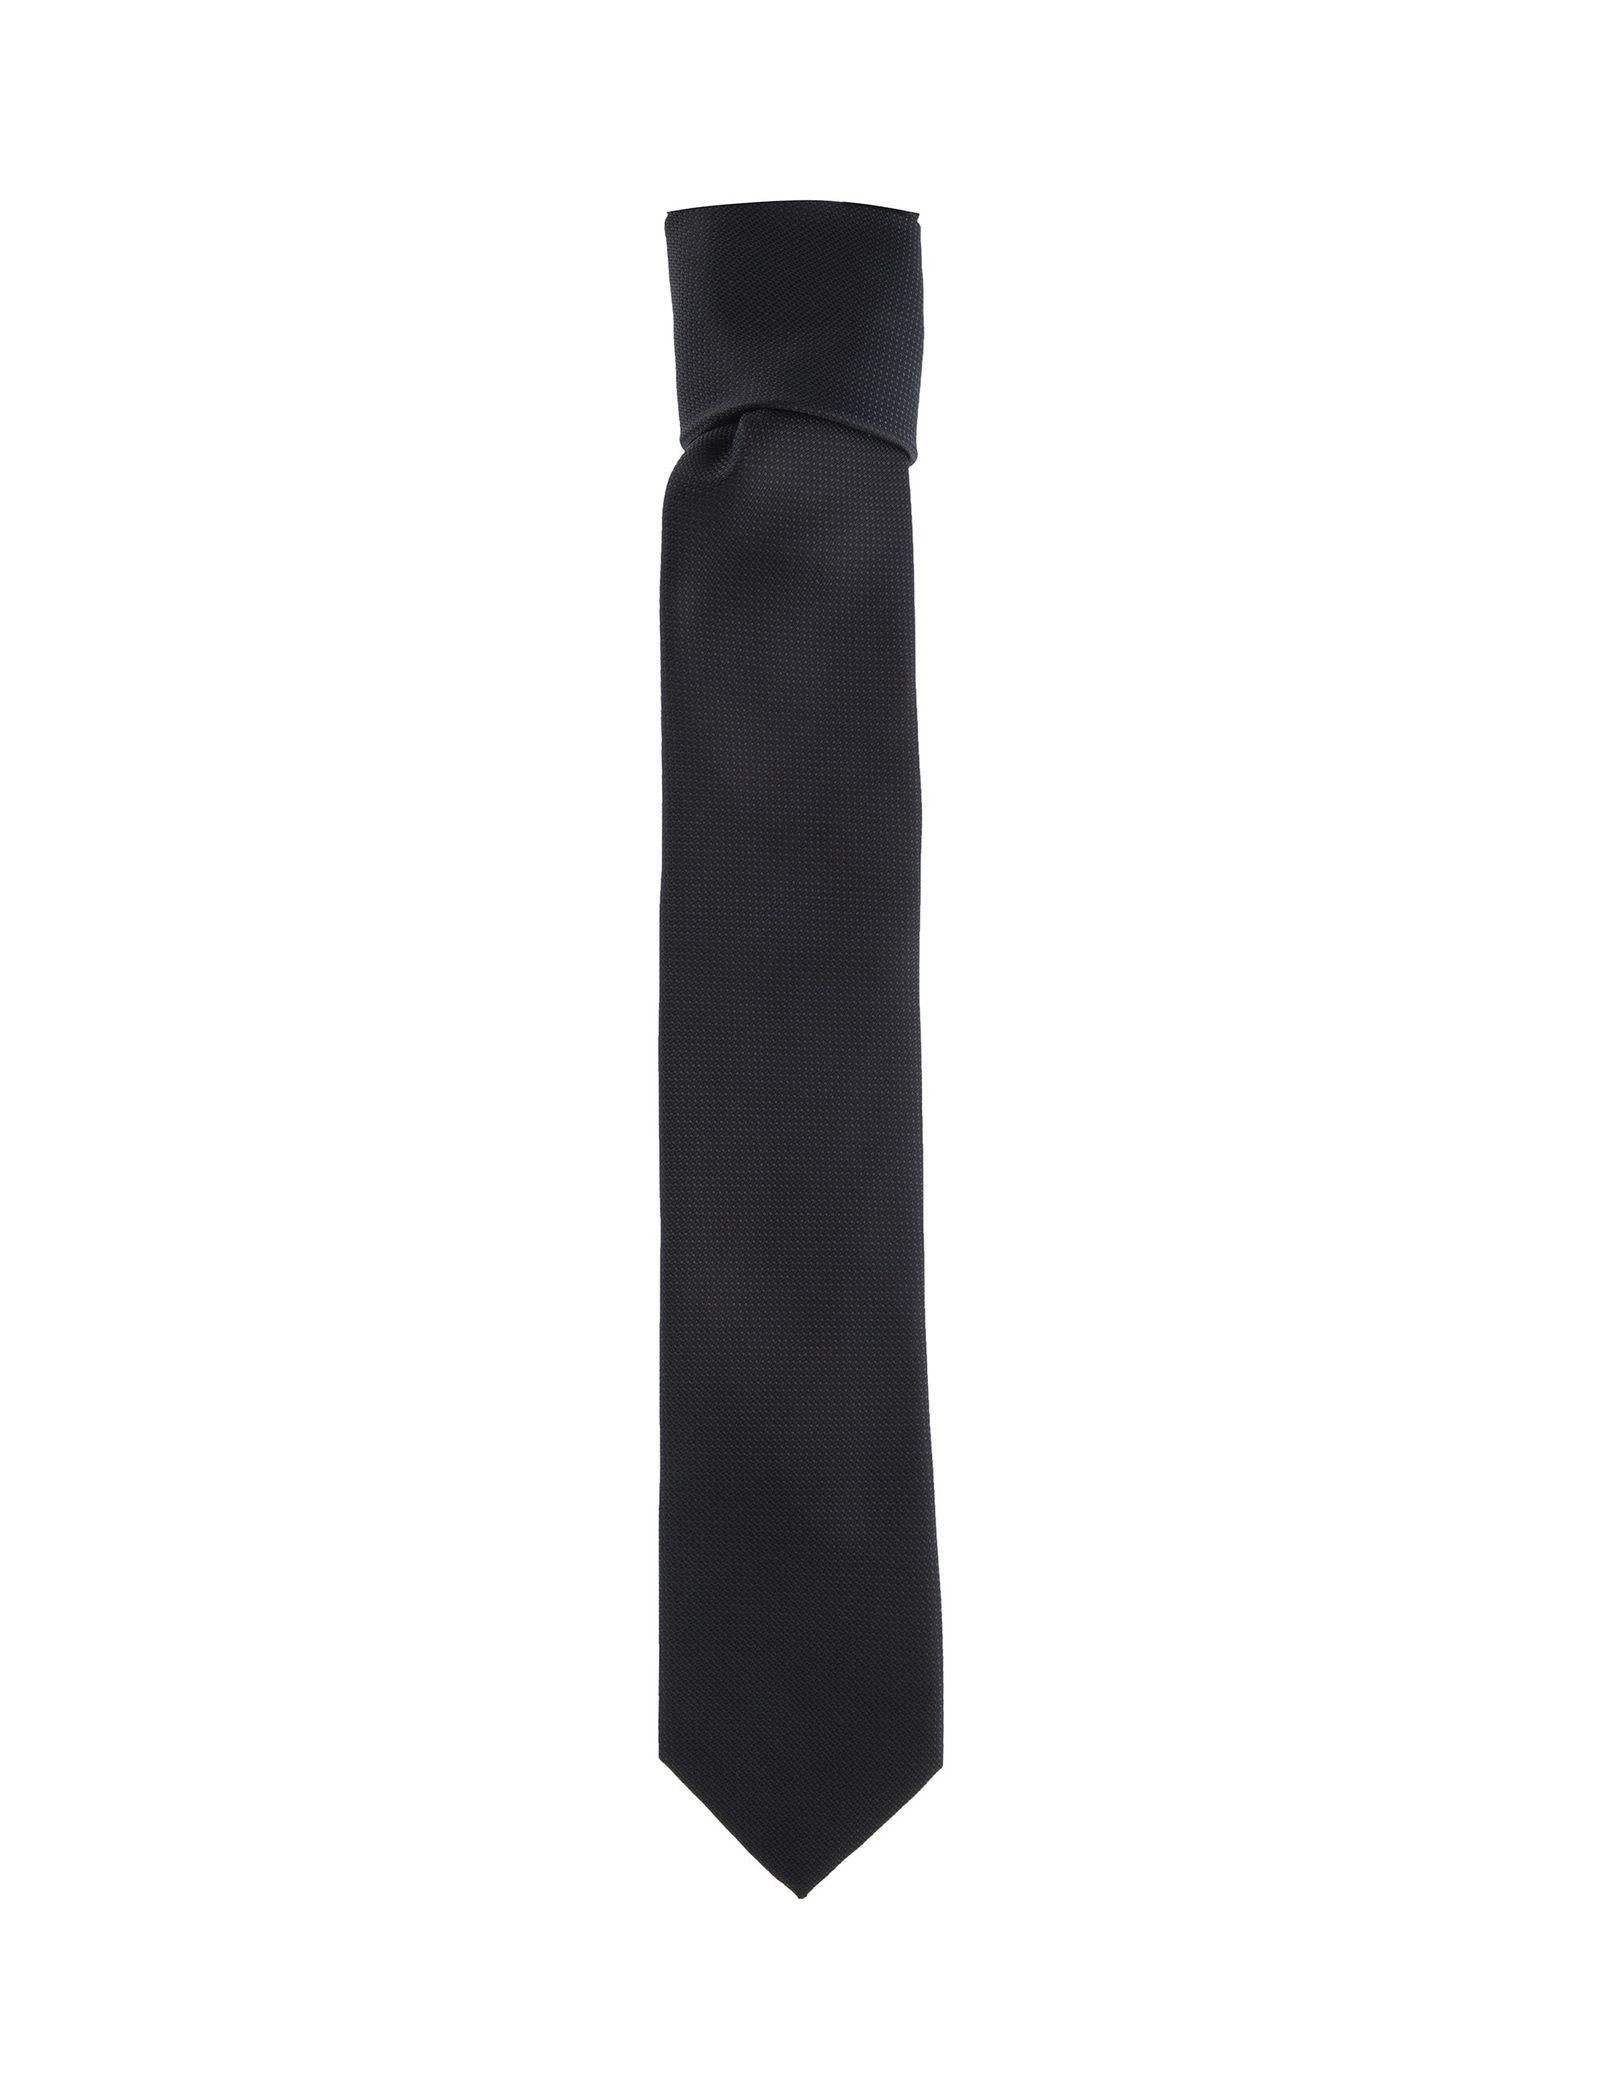 کراوات طرح دار مردانه - یوپیم تک سایز - مشکي - 1